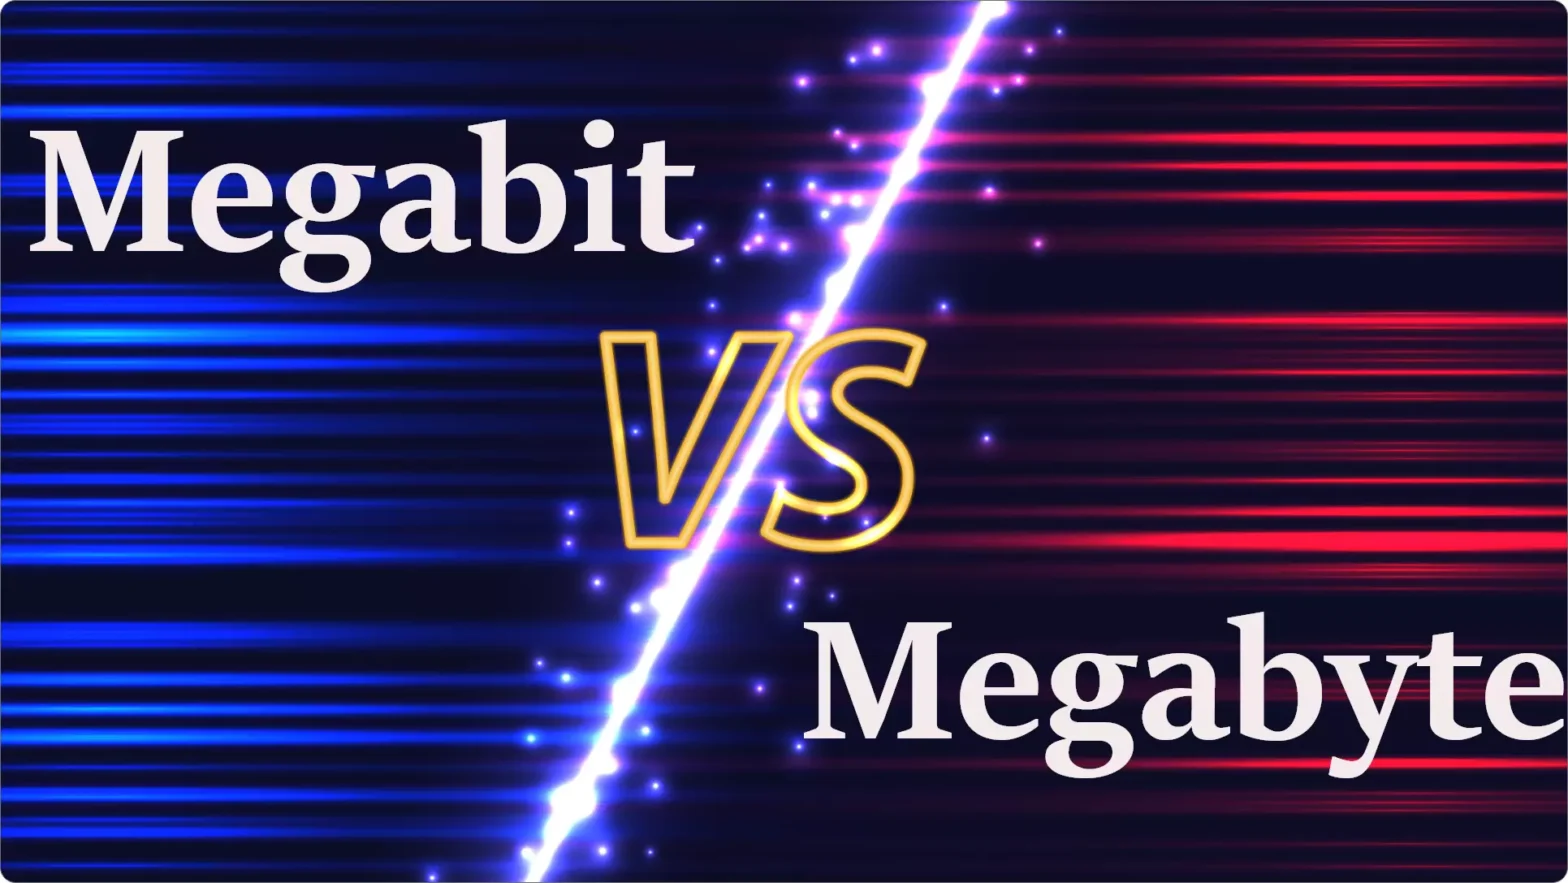 Megabit-vs-Megabyte